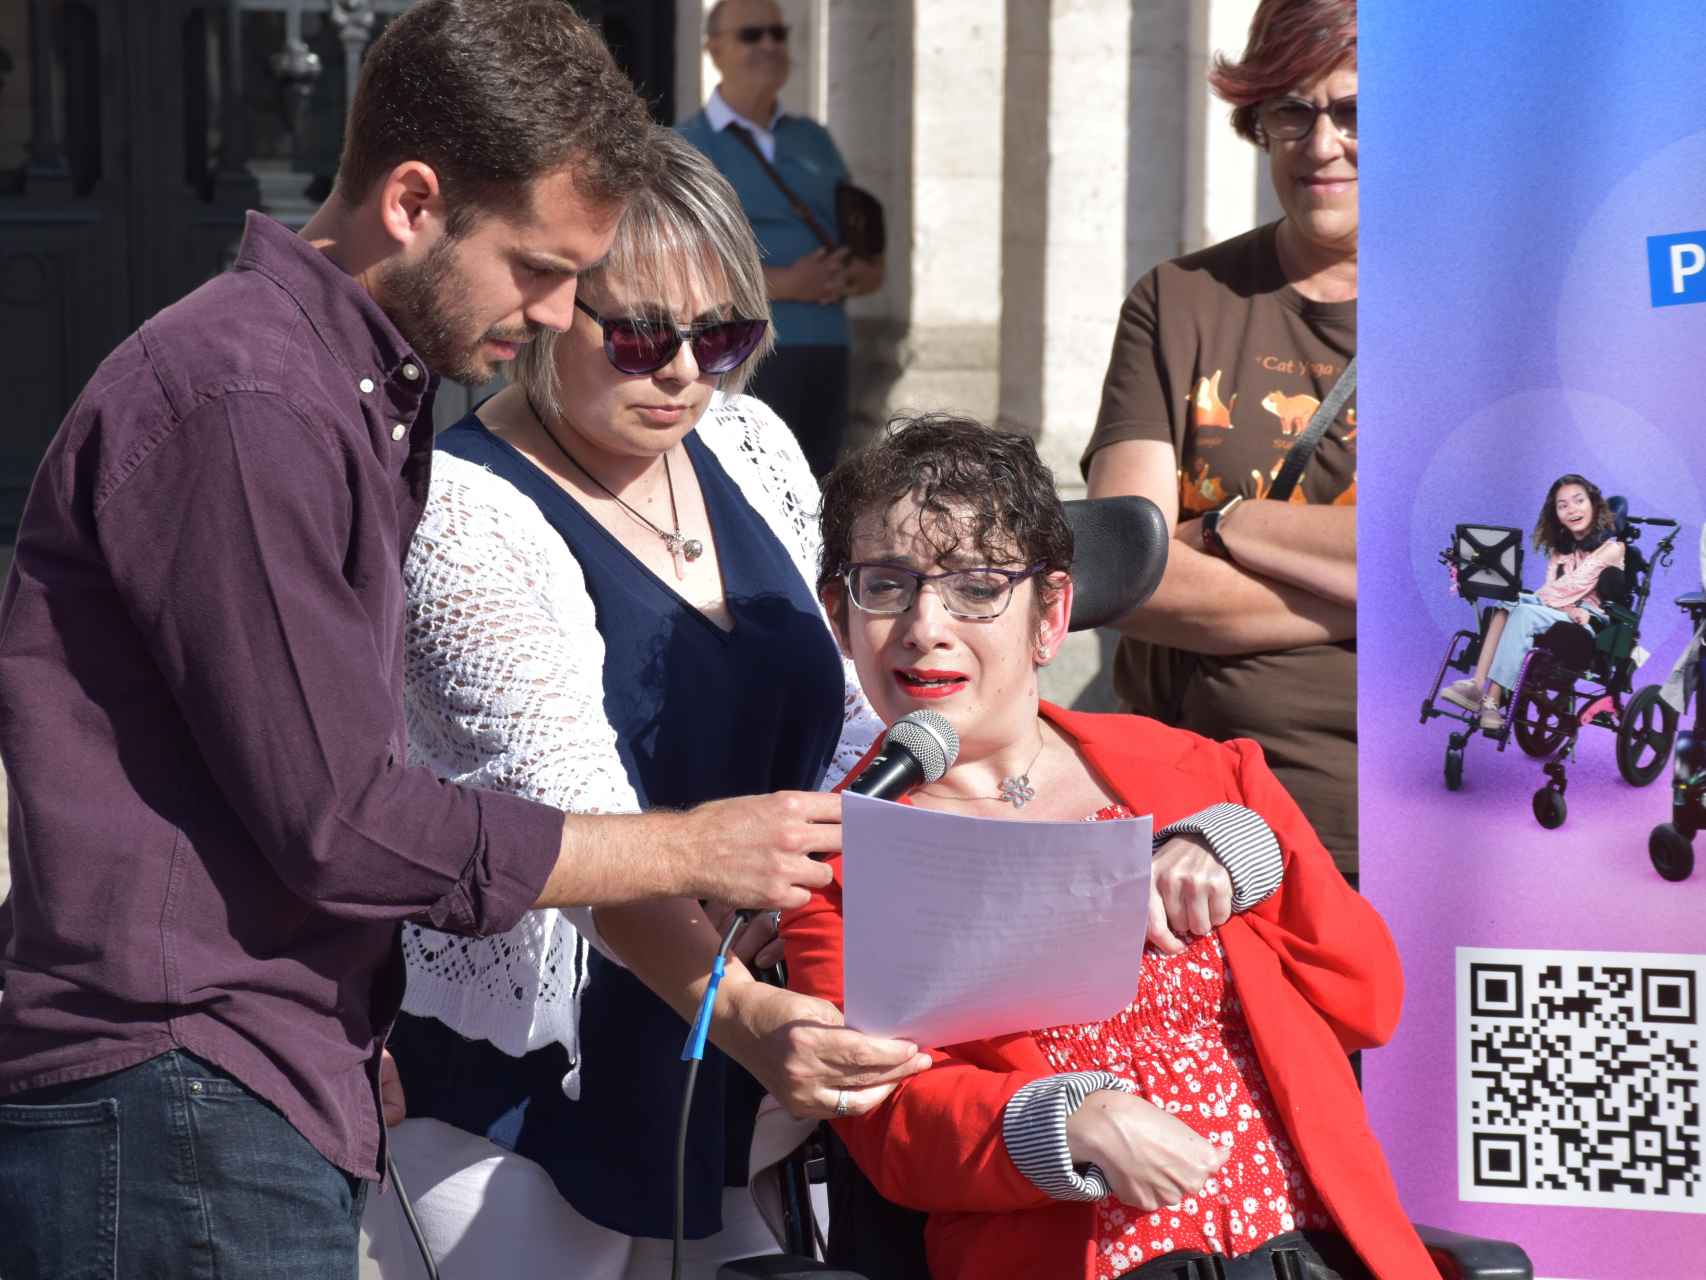 Rocío Molpeceres, vicepresidenta de Aspace Valladolid y mujer con parálisis cerebral, lee el manifiesto